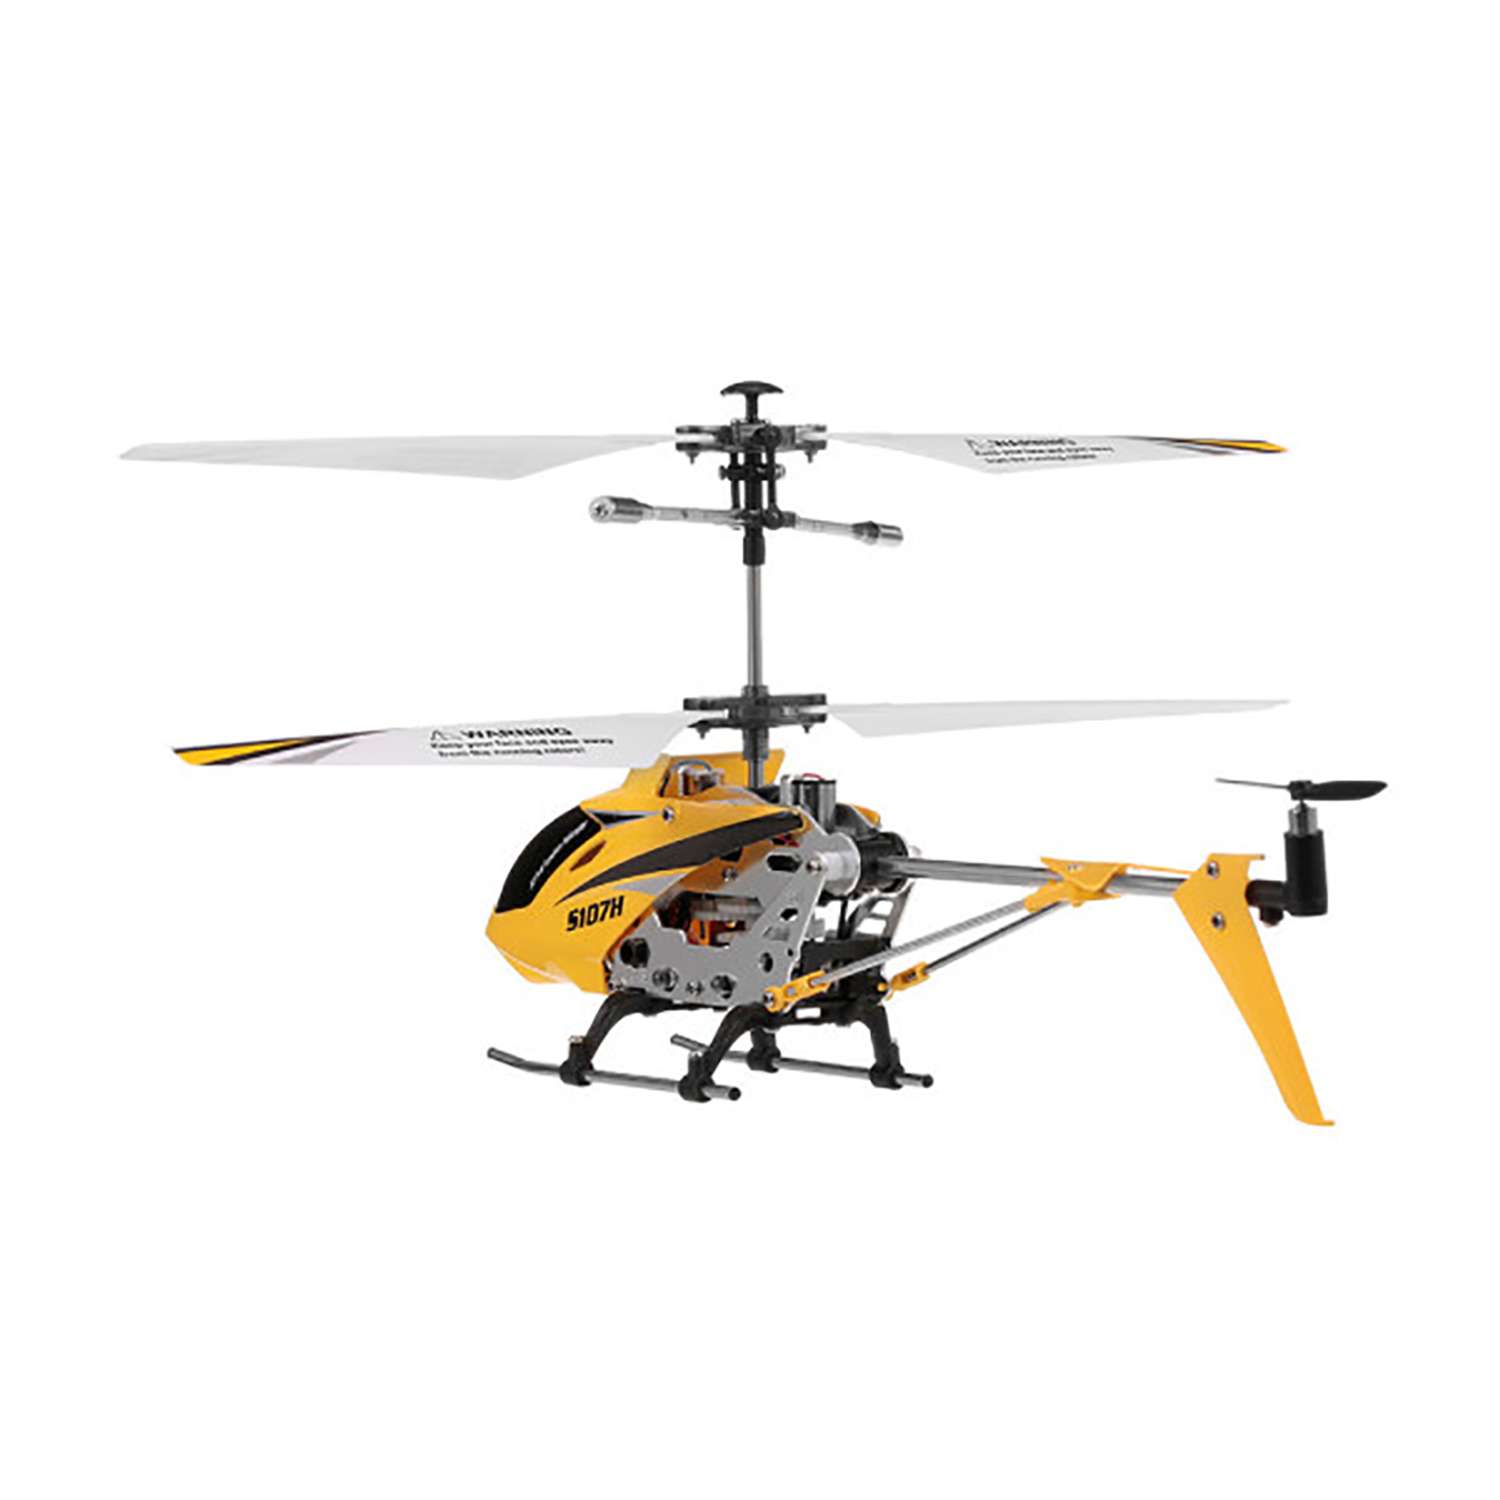 Радиоуправляемый вертолет SYMA Syma S107H Yellow 2.4G - фото 3